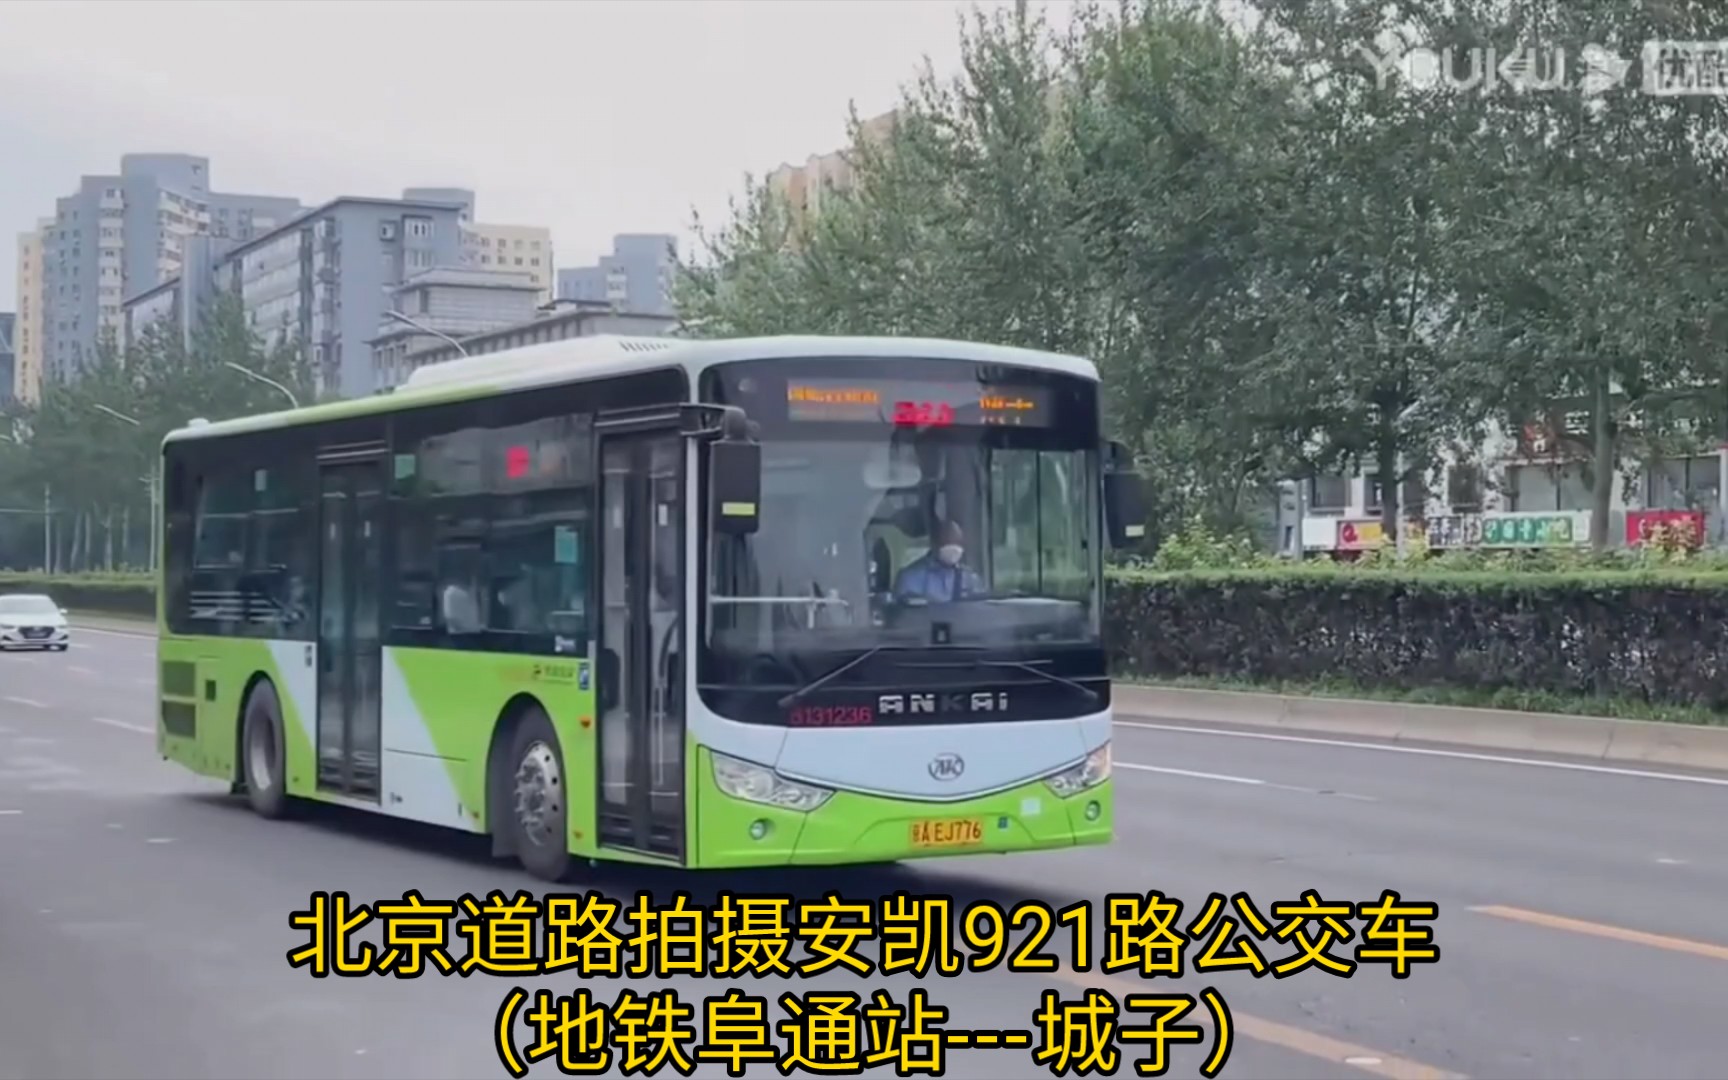 北京道路拍摄安凯921路公交车